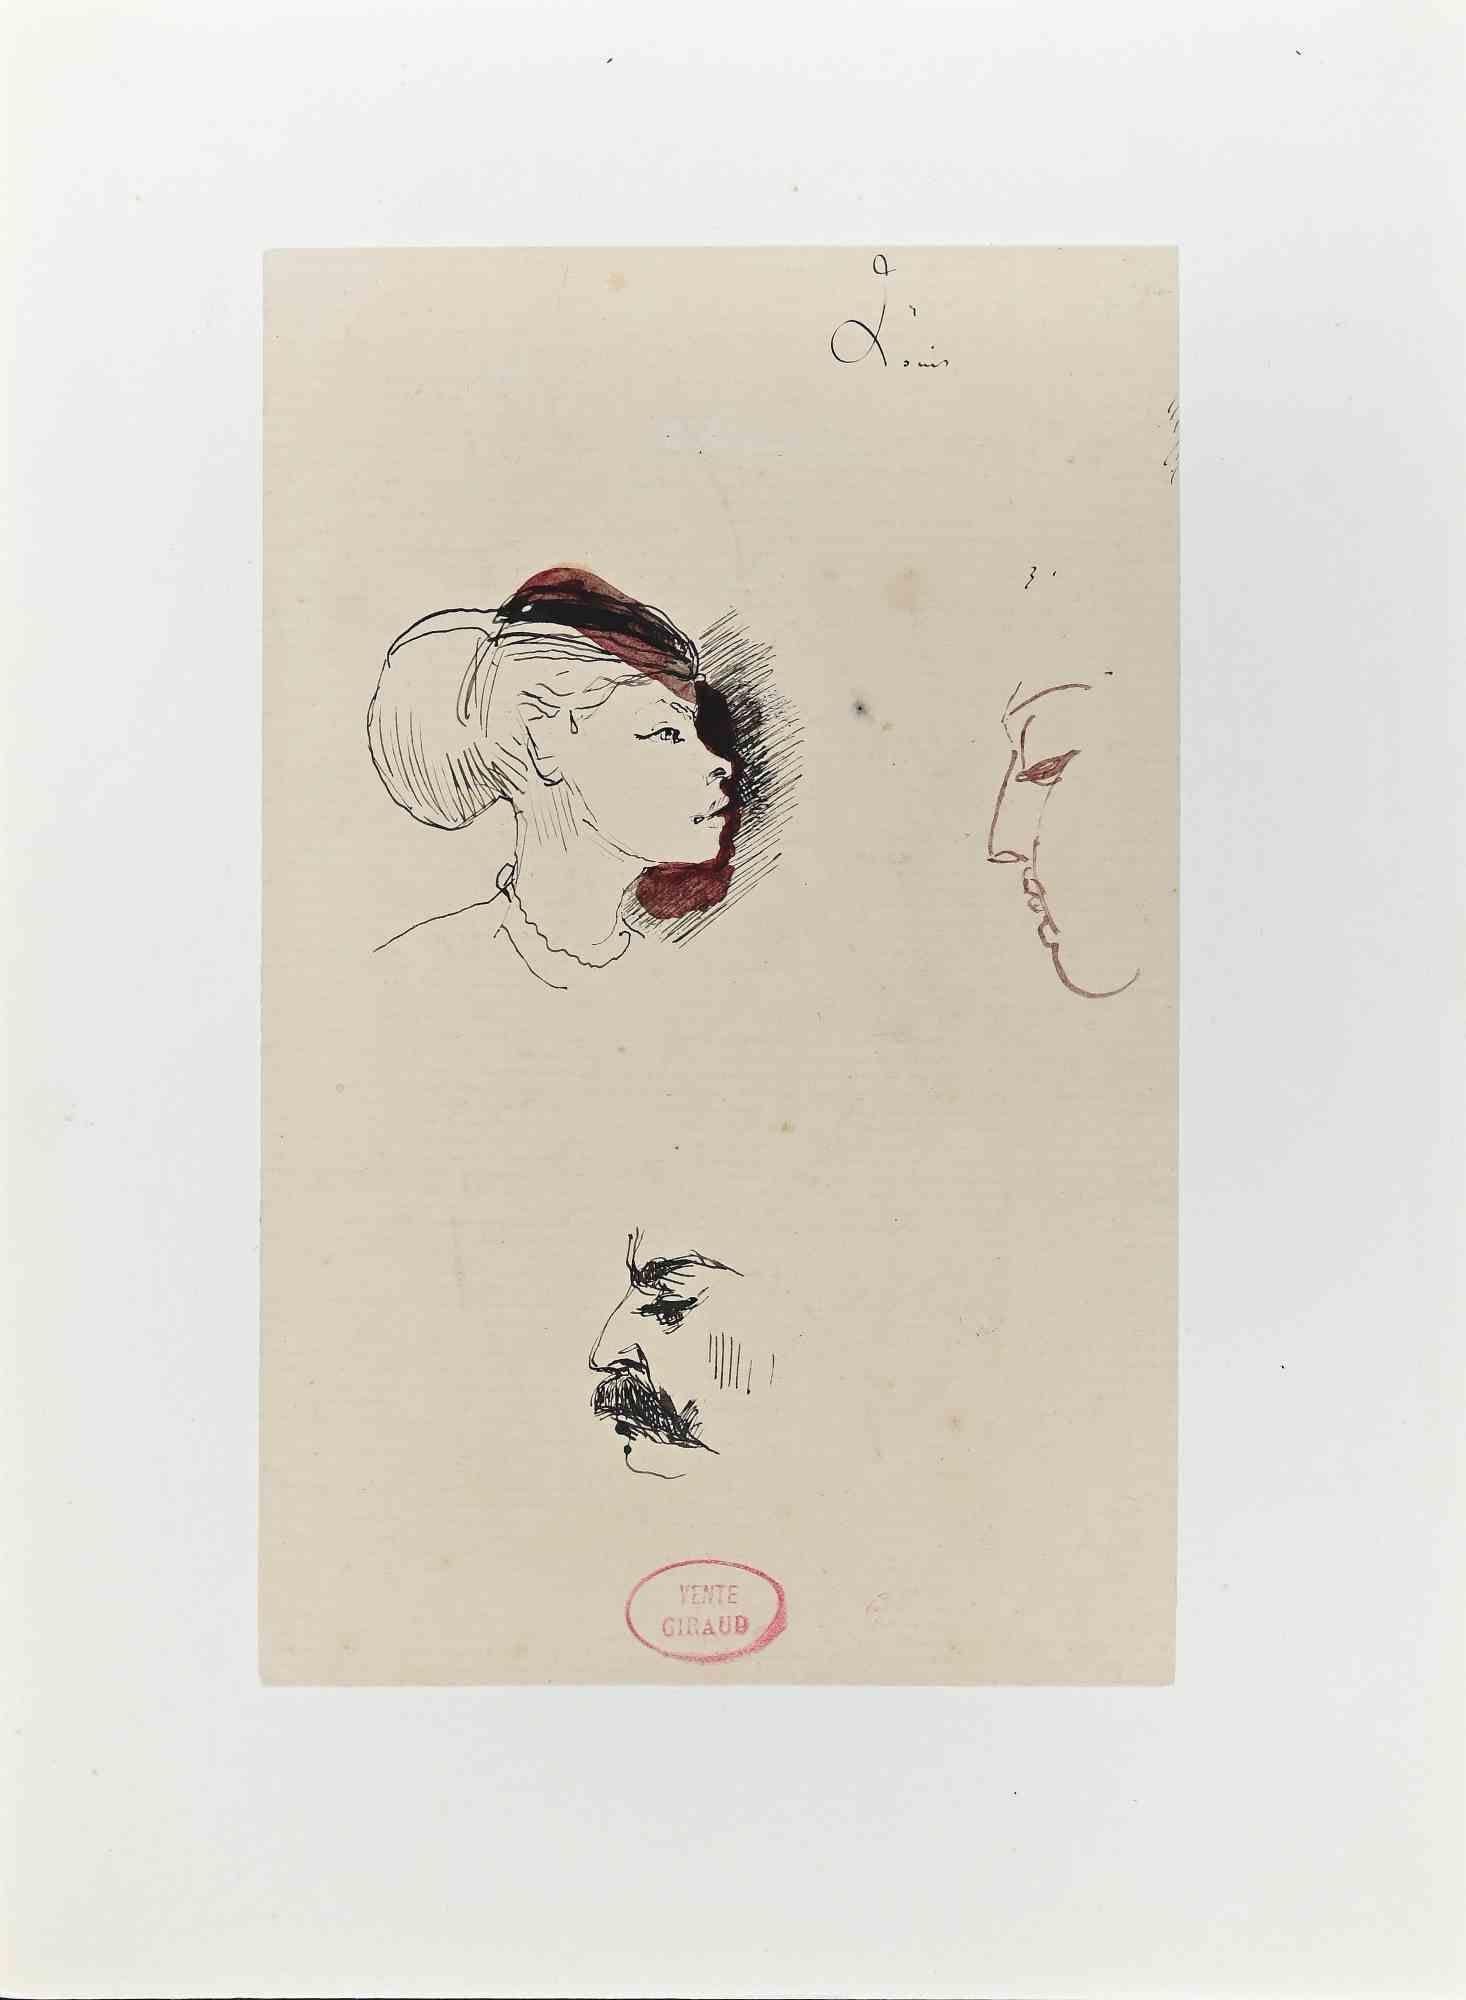 Profile - Original Tusche und Aquarell von Eugène Giraud - Ende 19. Jahrhundert